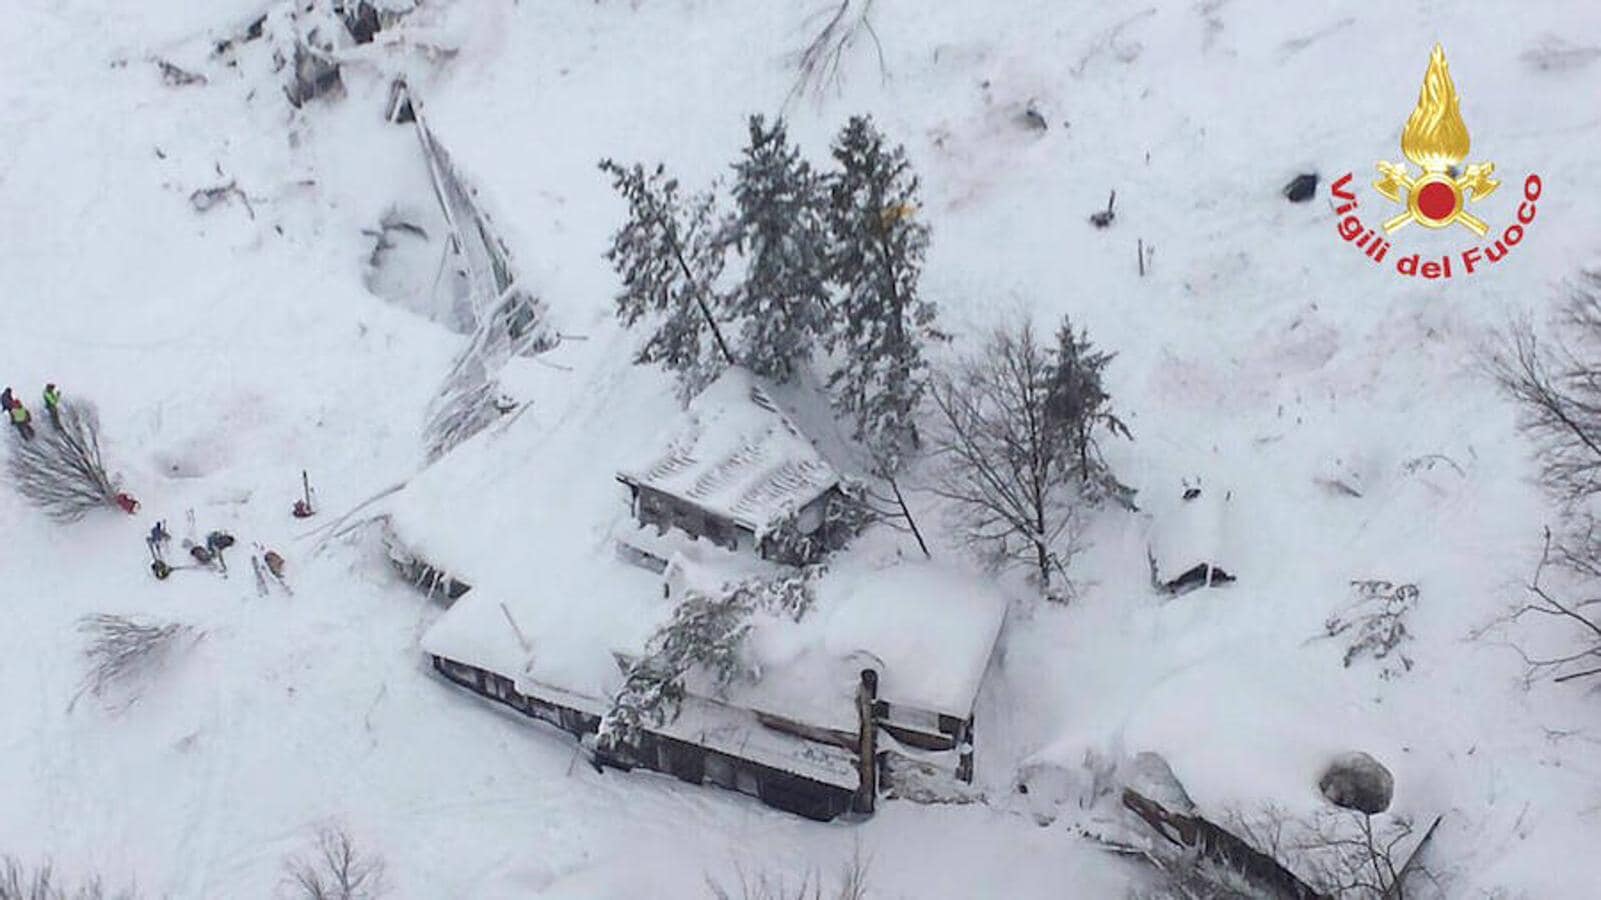 Vista aérea del hotel tras el alud que han provocado los diversos terremotos ocurridos ayer en Italia